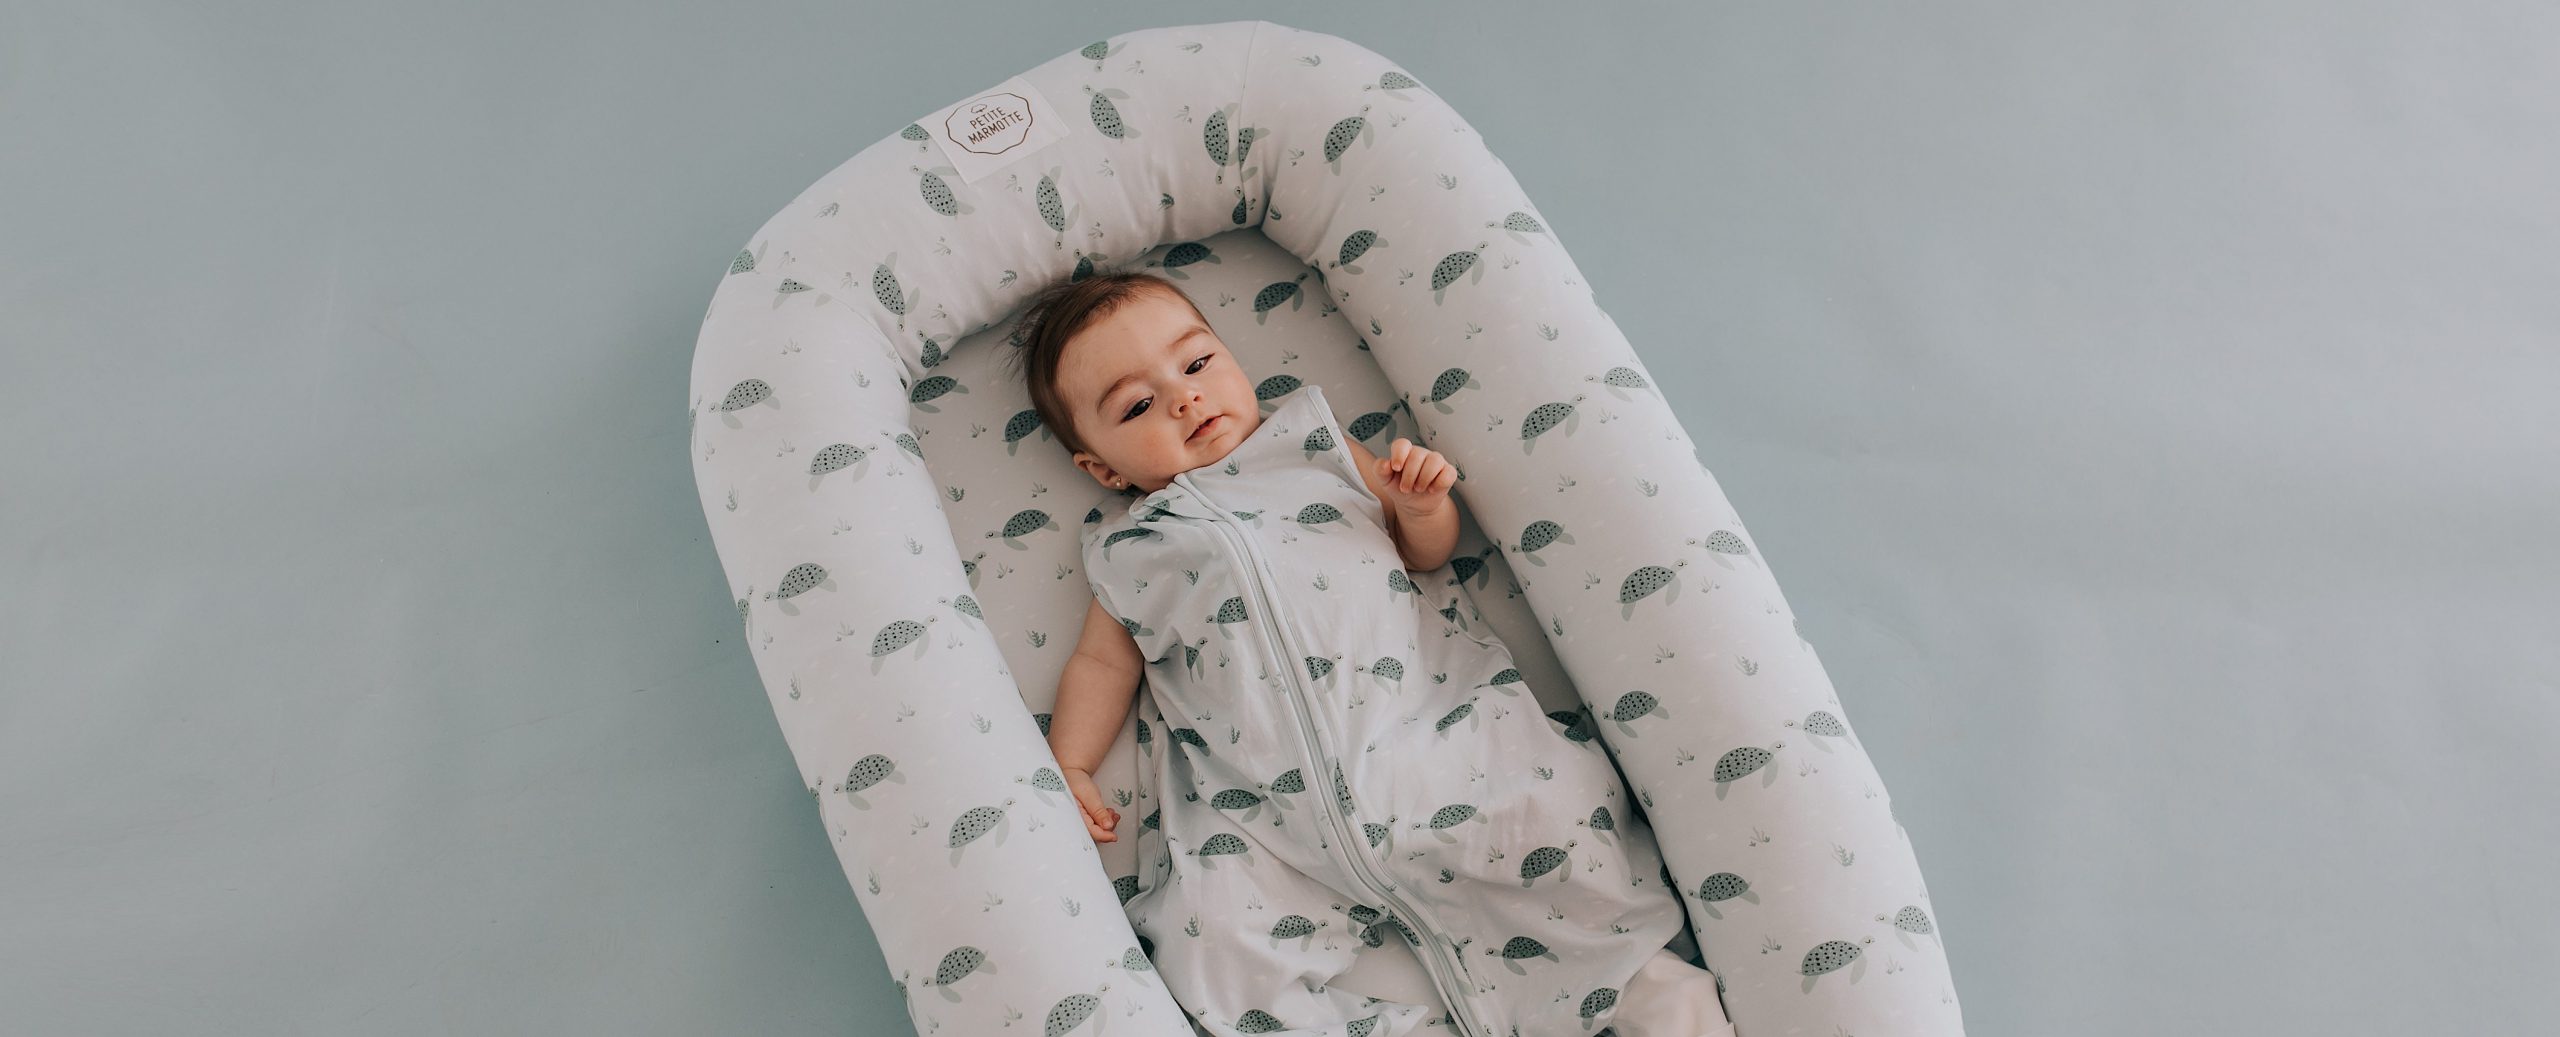 Cómo abrigar a tu bebé para dormir? - Petite Marmotte Blog